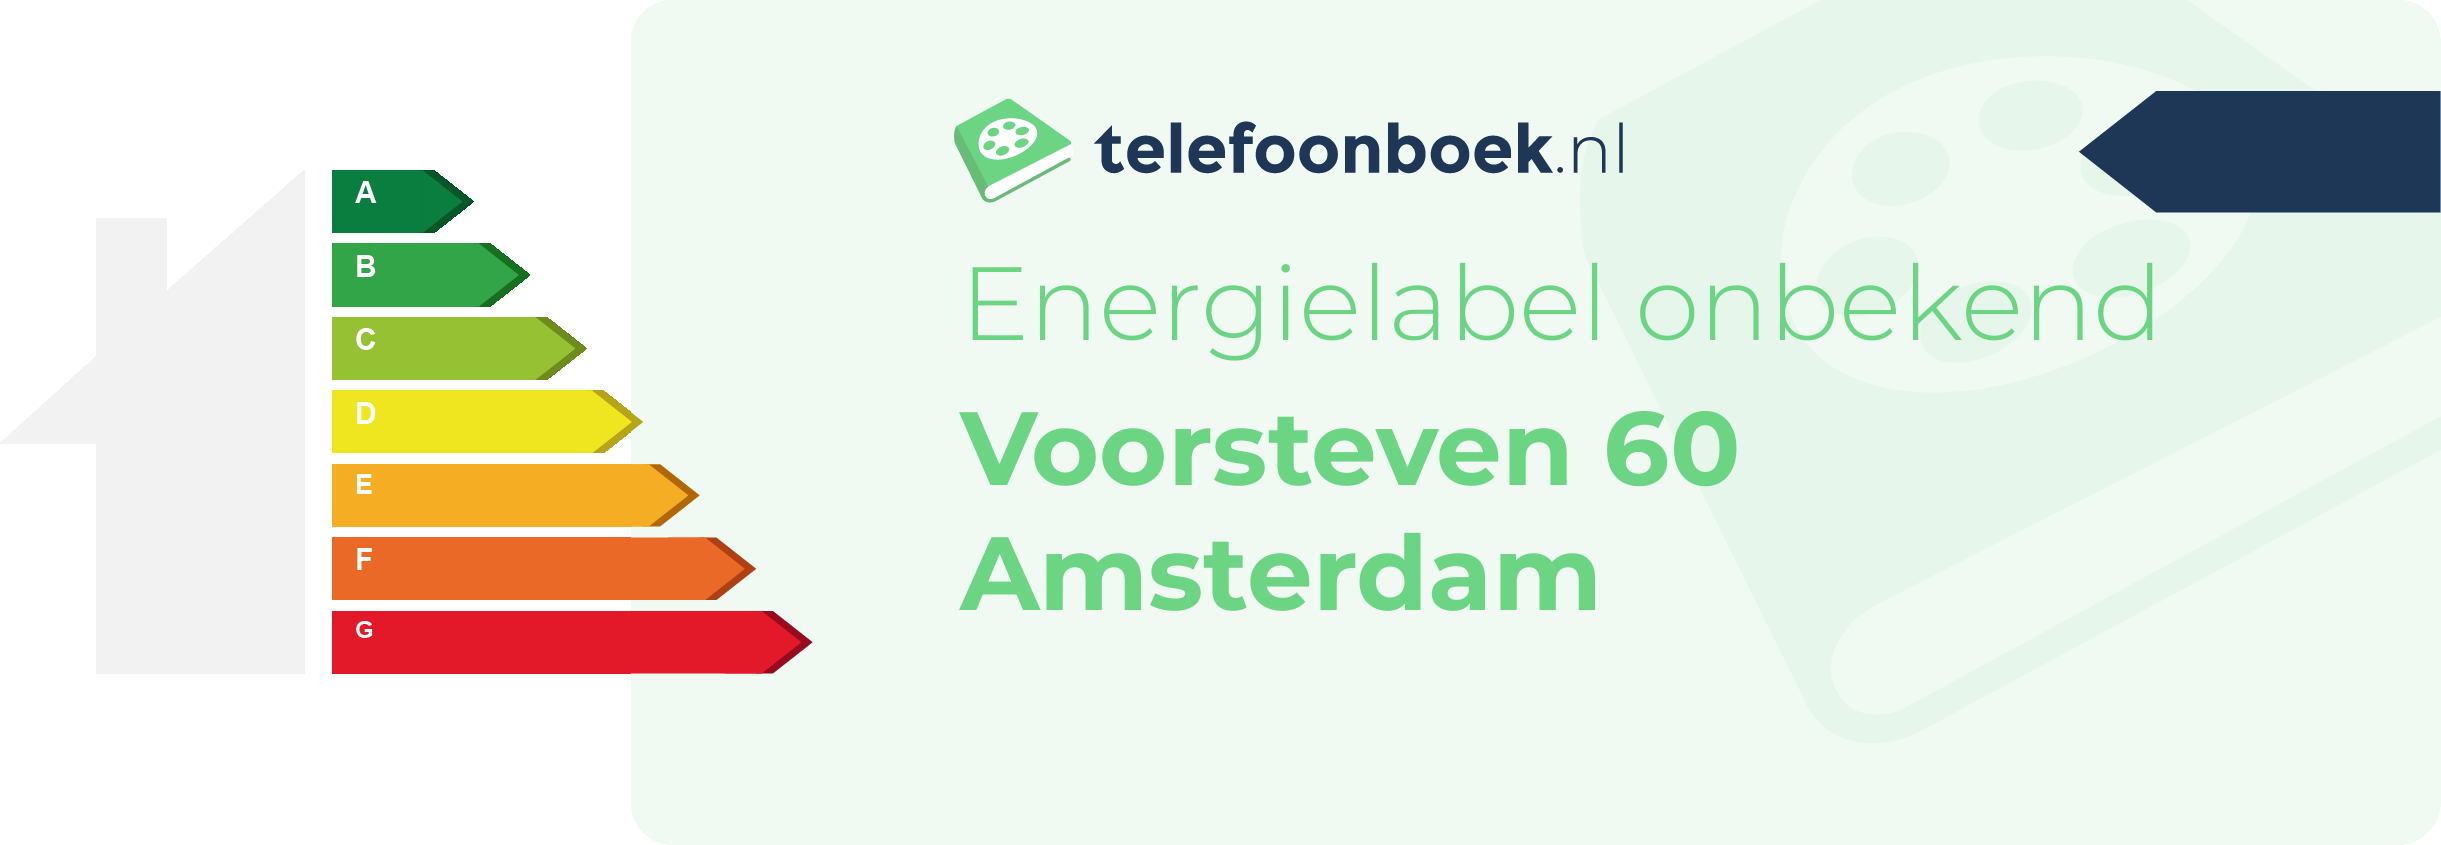 Energielabel Voorsteven 60 Amsterdam